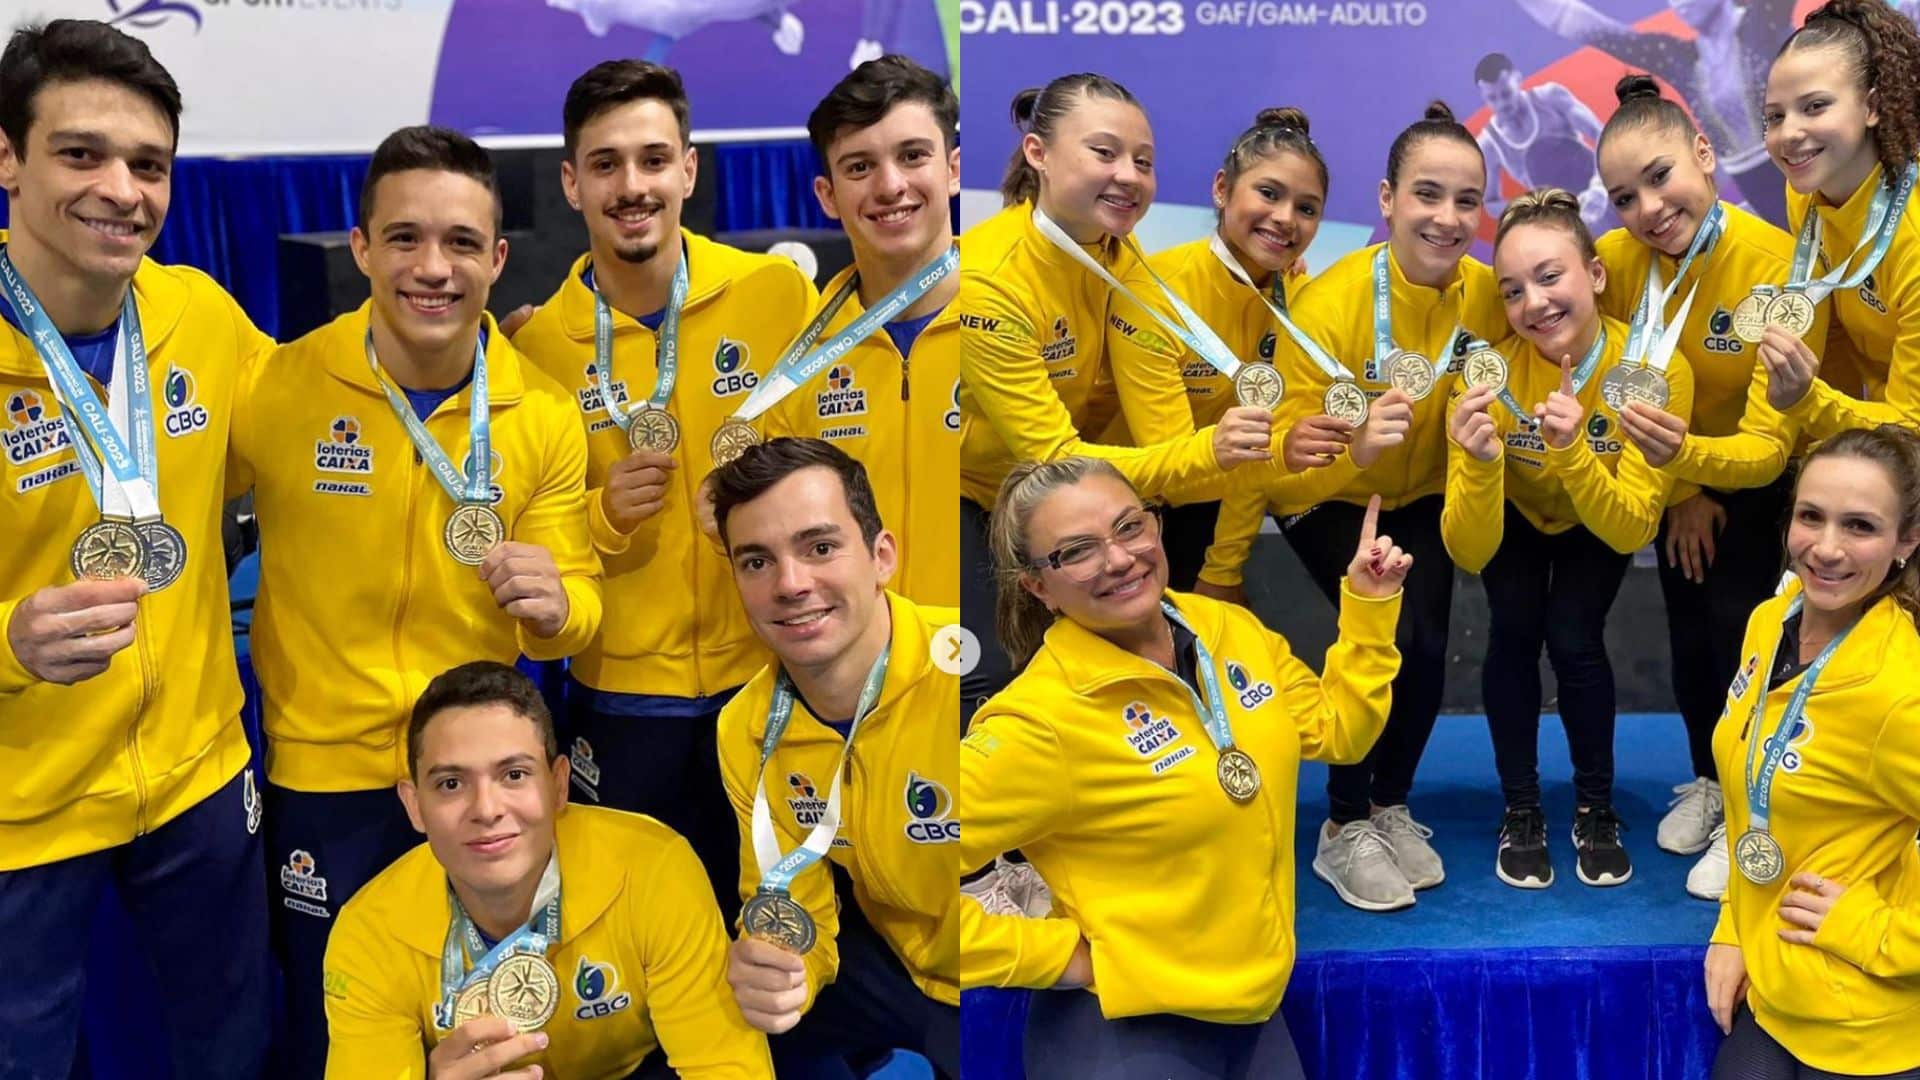 Brasil conquista 10 medalhas no Sul Americano de ginástica artística (Reprodução/Instagram/@cbginastica)